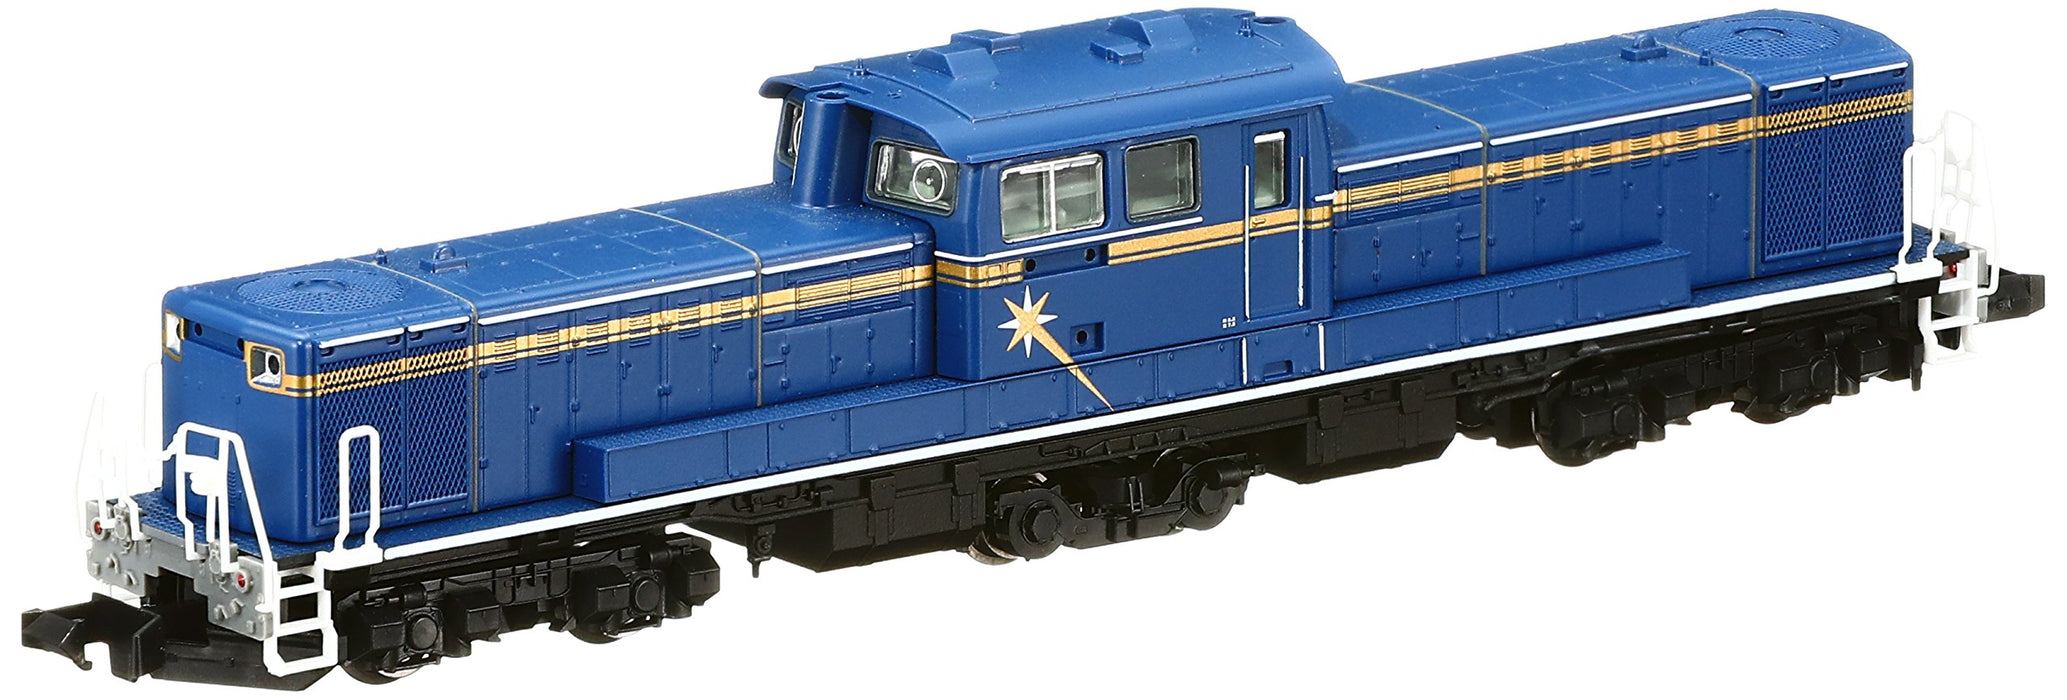 Tomytec Tomix N Gauge DD51 JR Hokkaido 2215 Diesel Locomotive Railway Model